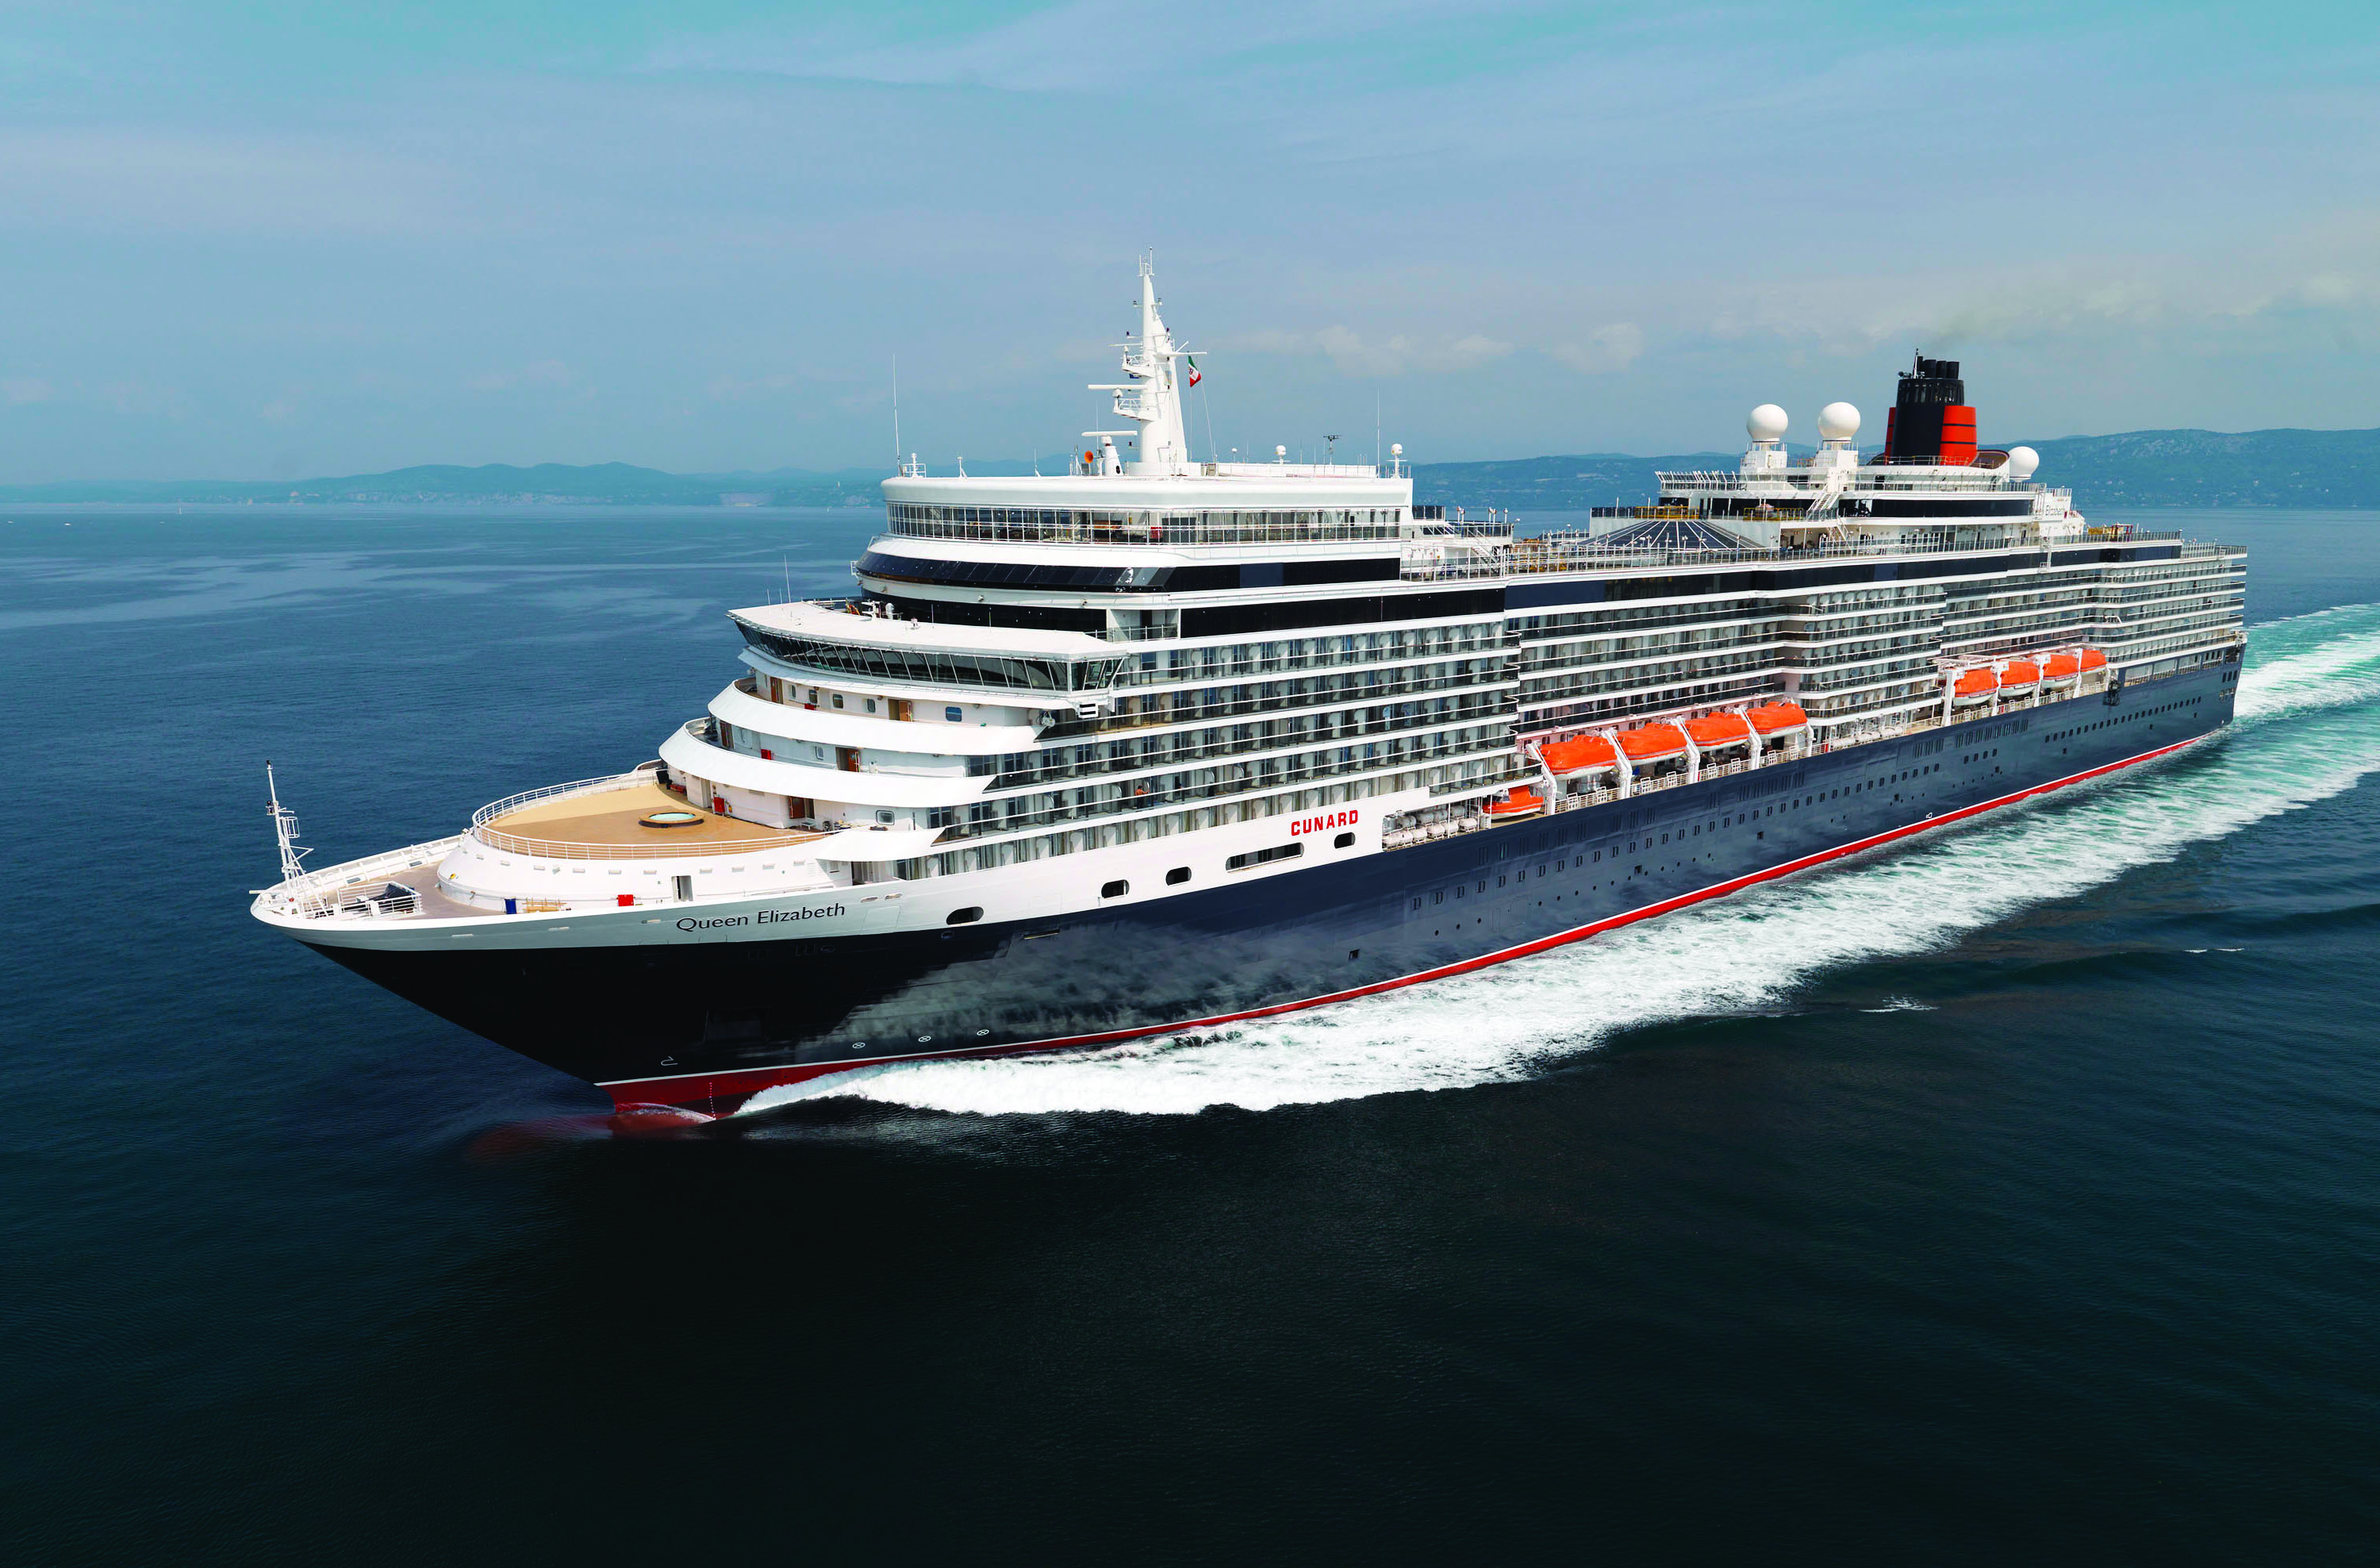 Ab sofort sind die Cunard-Kreuzfahrten für den Reisezeitraum April 2021 bis Januar 2022 buchbar. Die Queen Elizabeth verbringt den Sommer 2021 in Asien und Alaska.